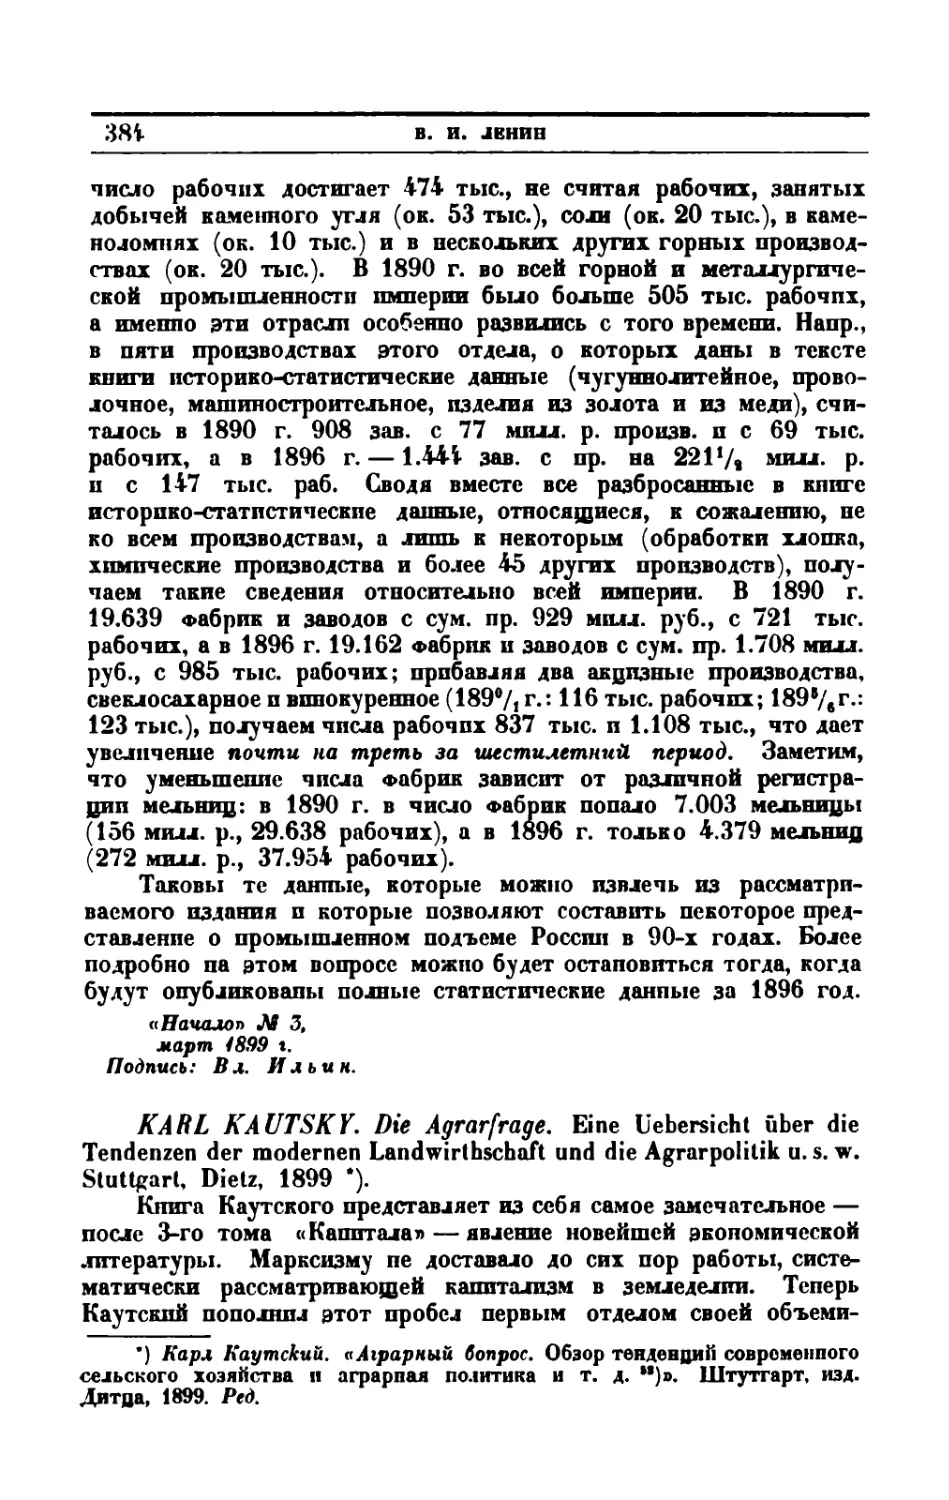 Karl Kautsky. Die Agrarfrage. Eine Uebersicht Ober die Tendenzen der modernen Landwirtschaft und die Agrarpolitik u. s. w. Stuttgart, Dietz, 1899